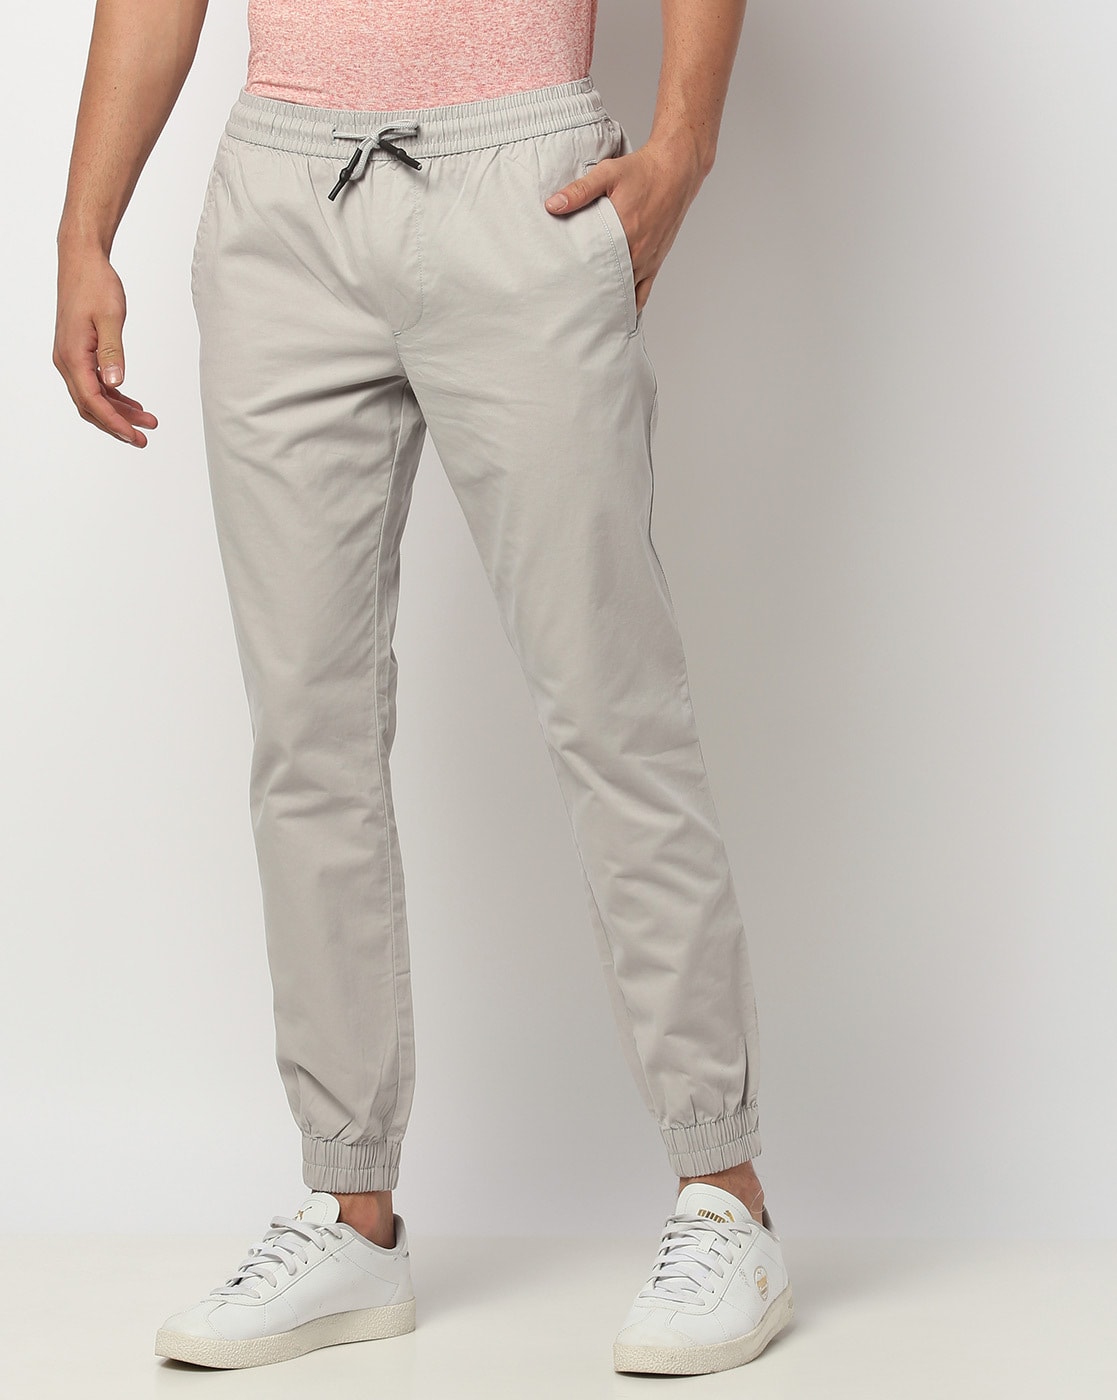 Buy Highlander Black Slim Fit Track Pants for Men Online at Rs.431 - Ketch